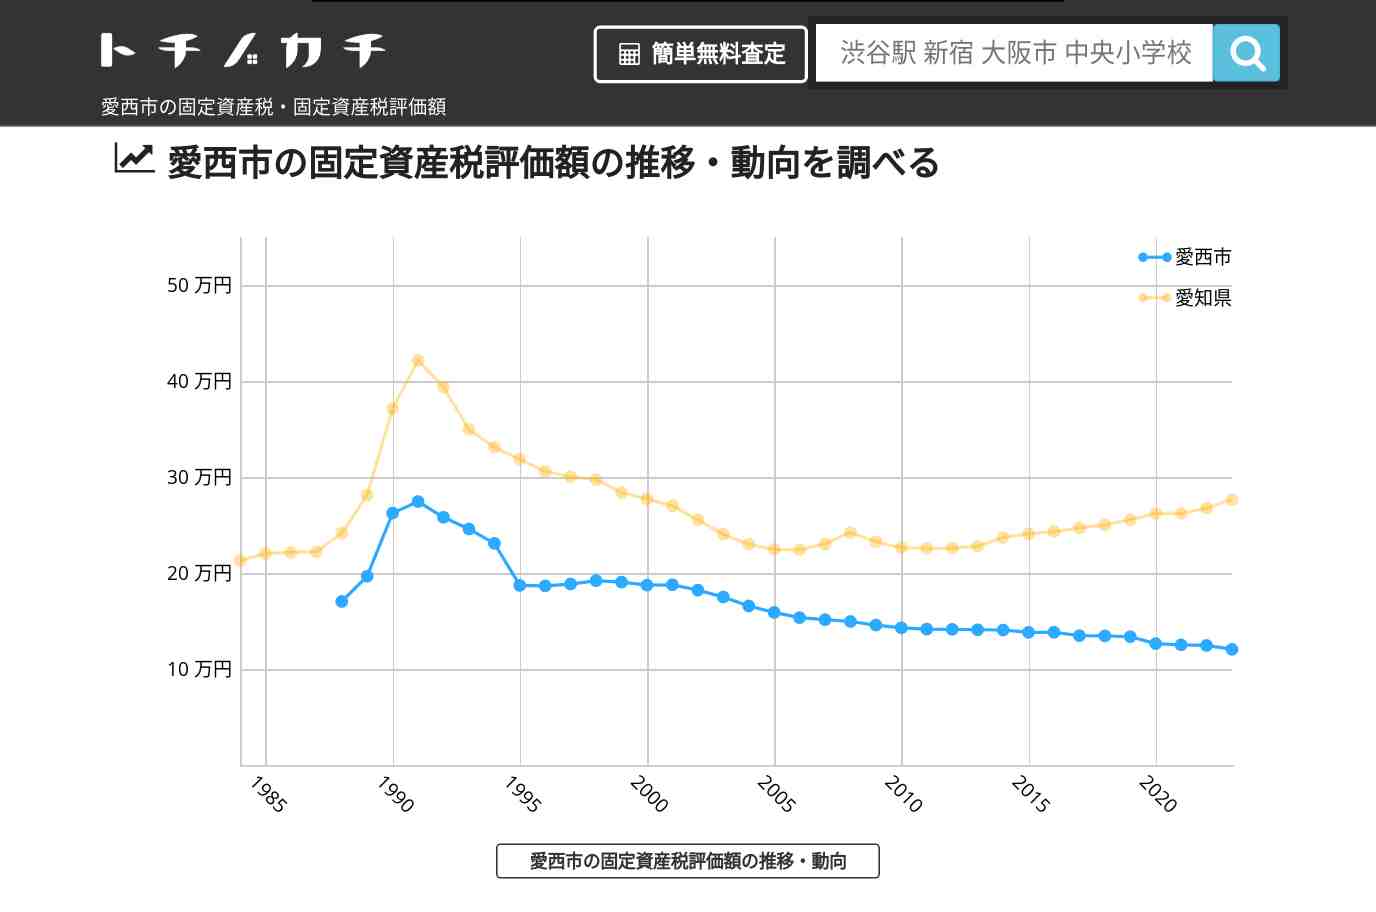 永和小学校(愛知県 愛西市)周辺の固定資産税・固定資産税評価額 | トチノカチ